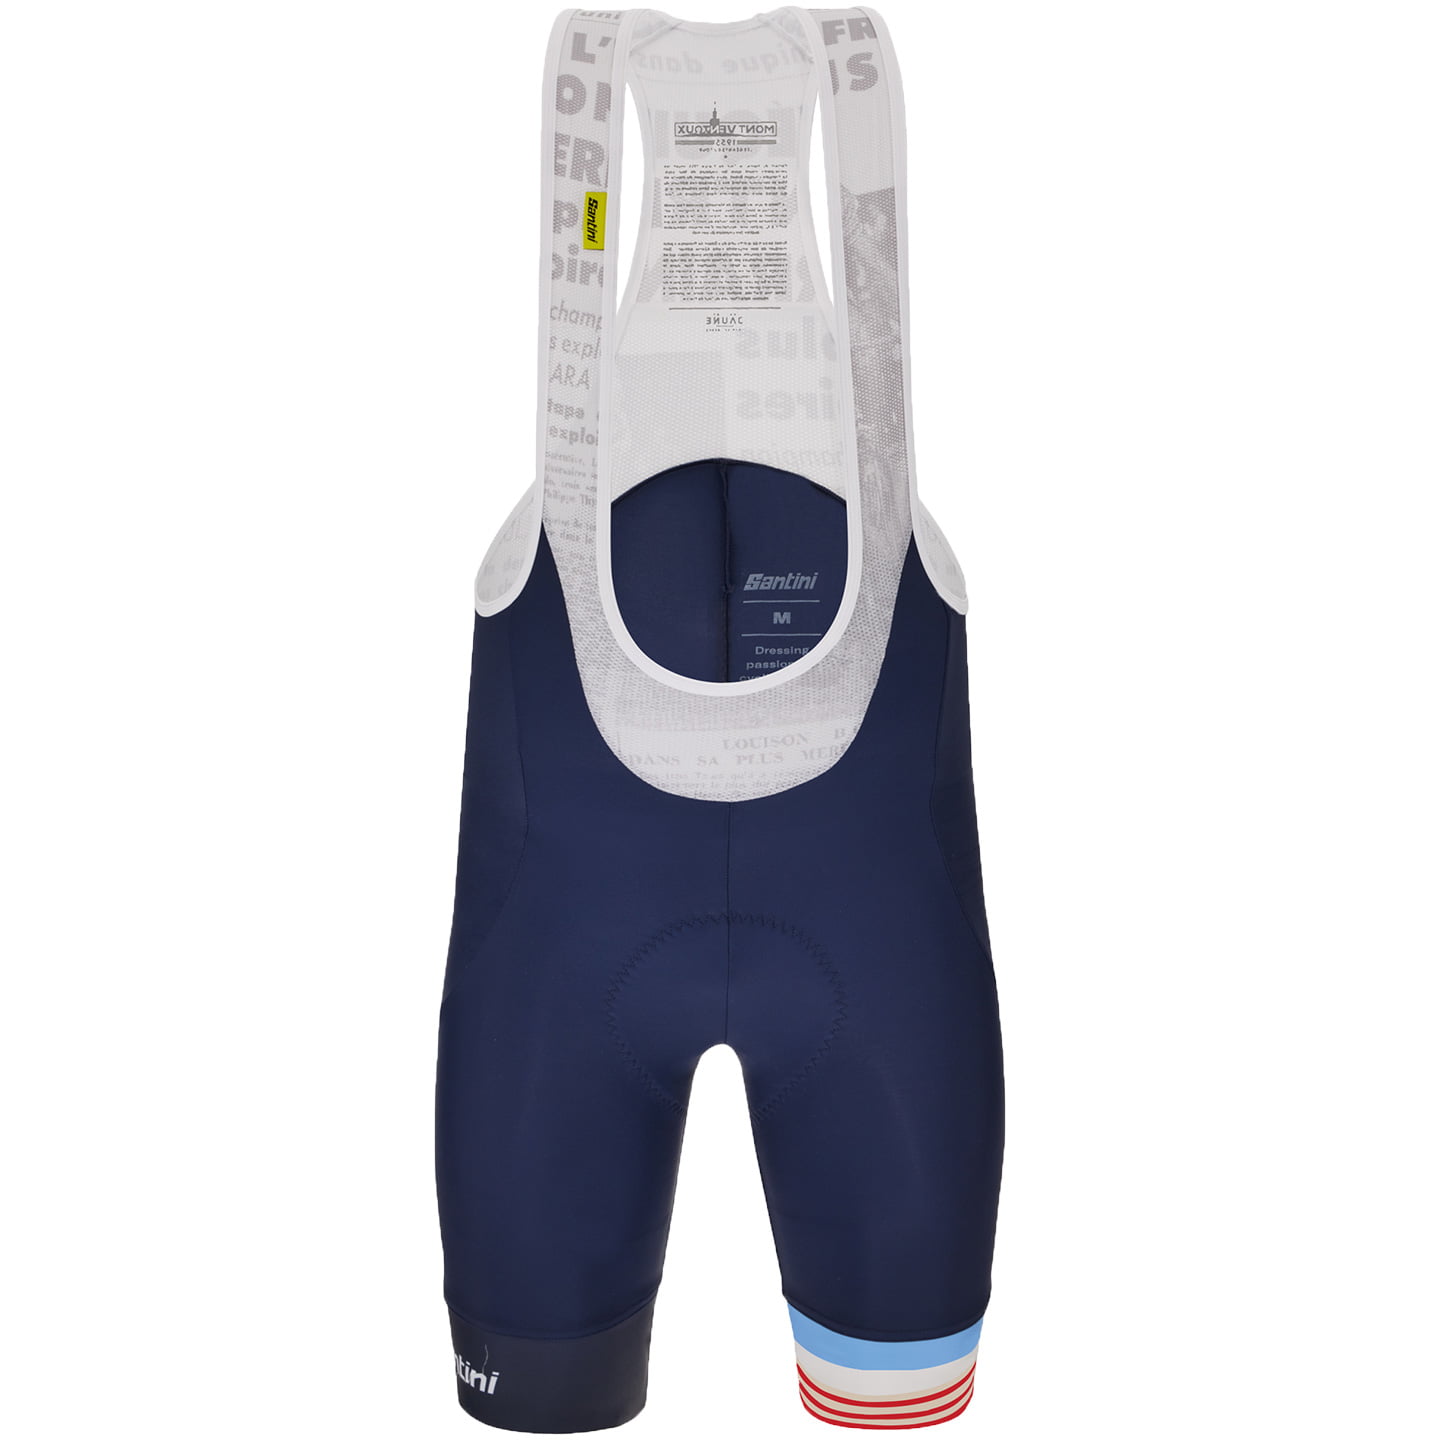 TOUR DE FRANCE Bib Shorts Le Maillot Jaune Mont Ventoux 2023, for men, size L, Cycle shorts, Cycling clothing